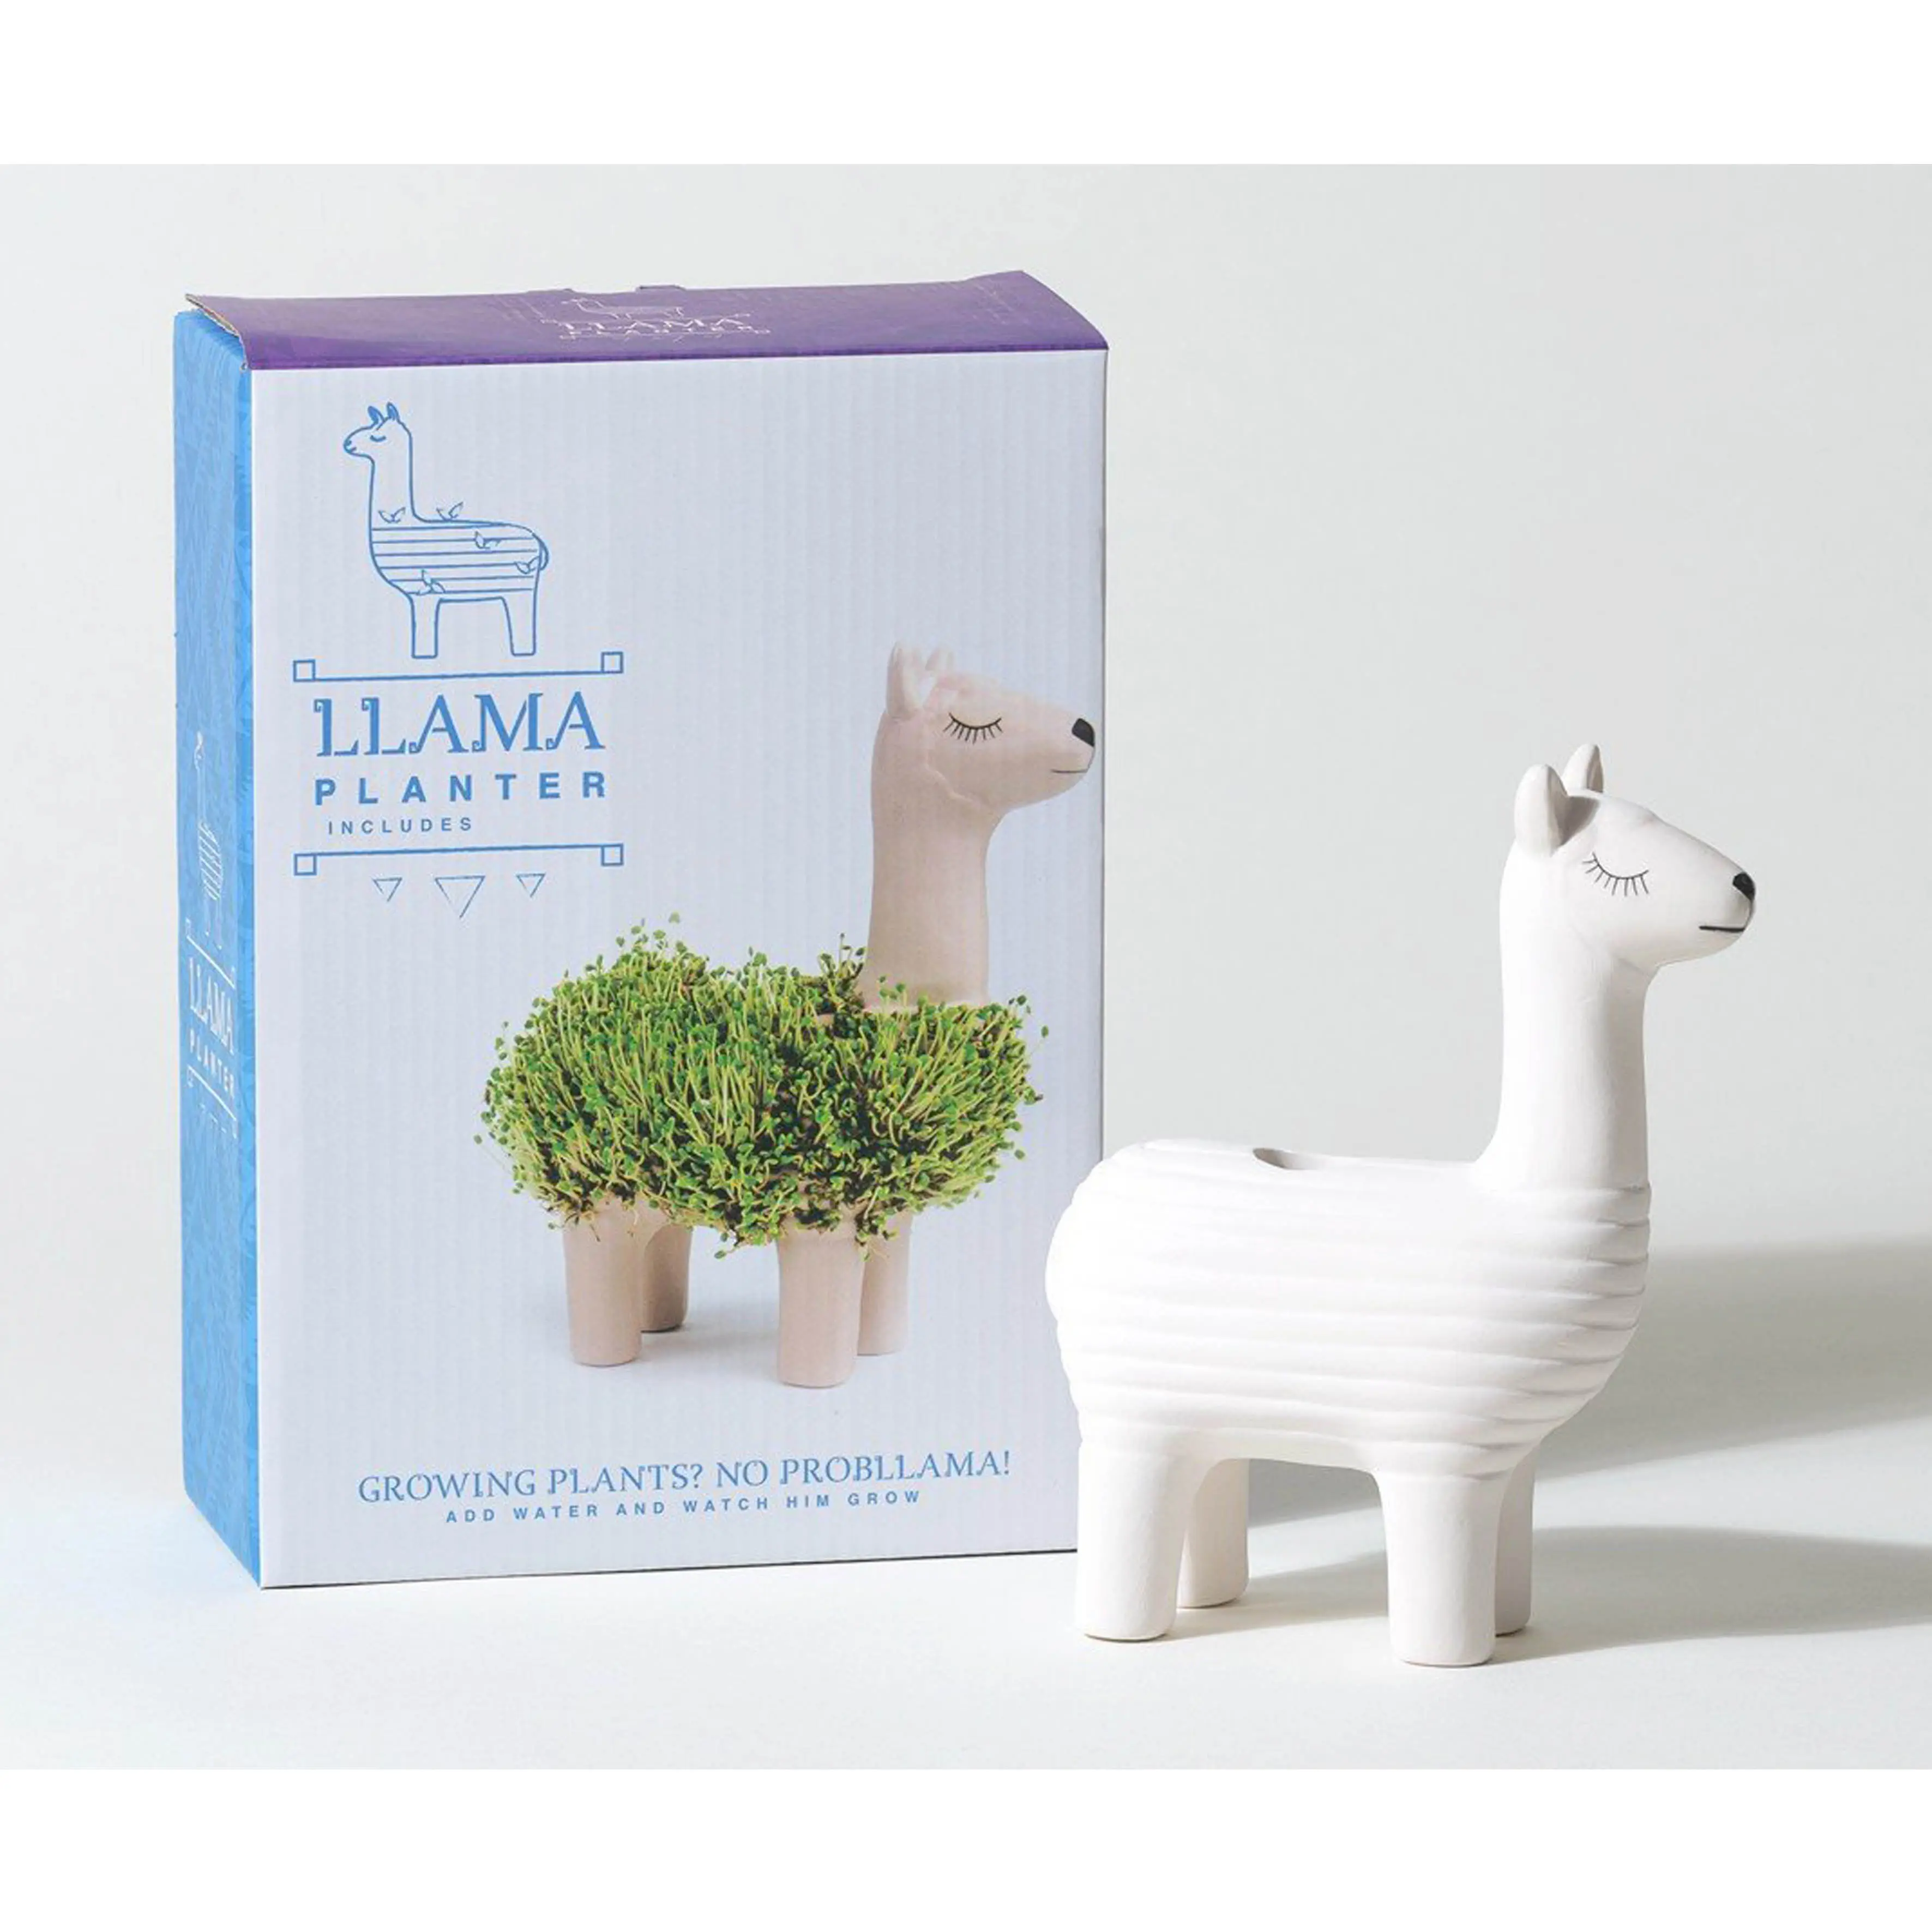 Kit de culture de plantes d'intérieur de haute qualité, souvenirs, cadeau Llama personnalisé